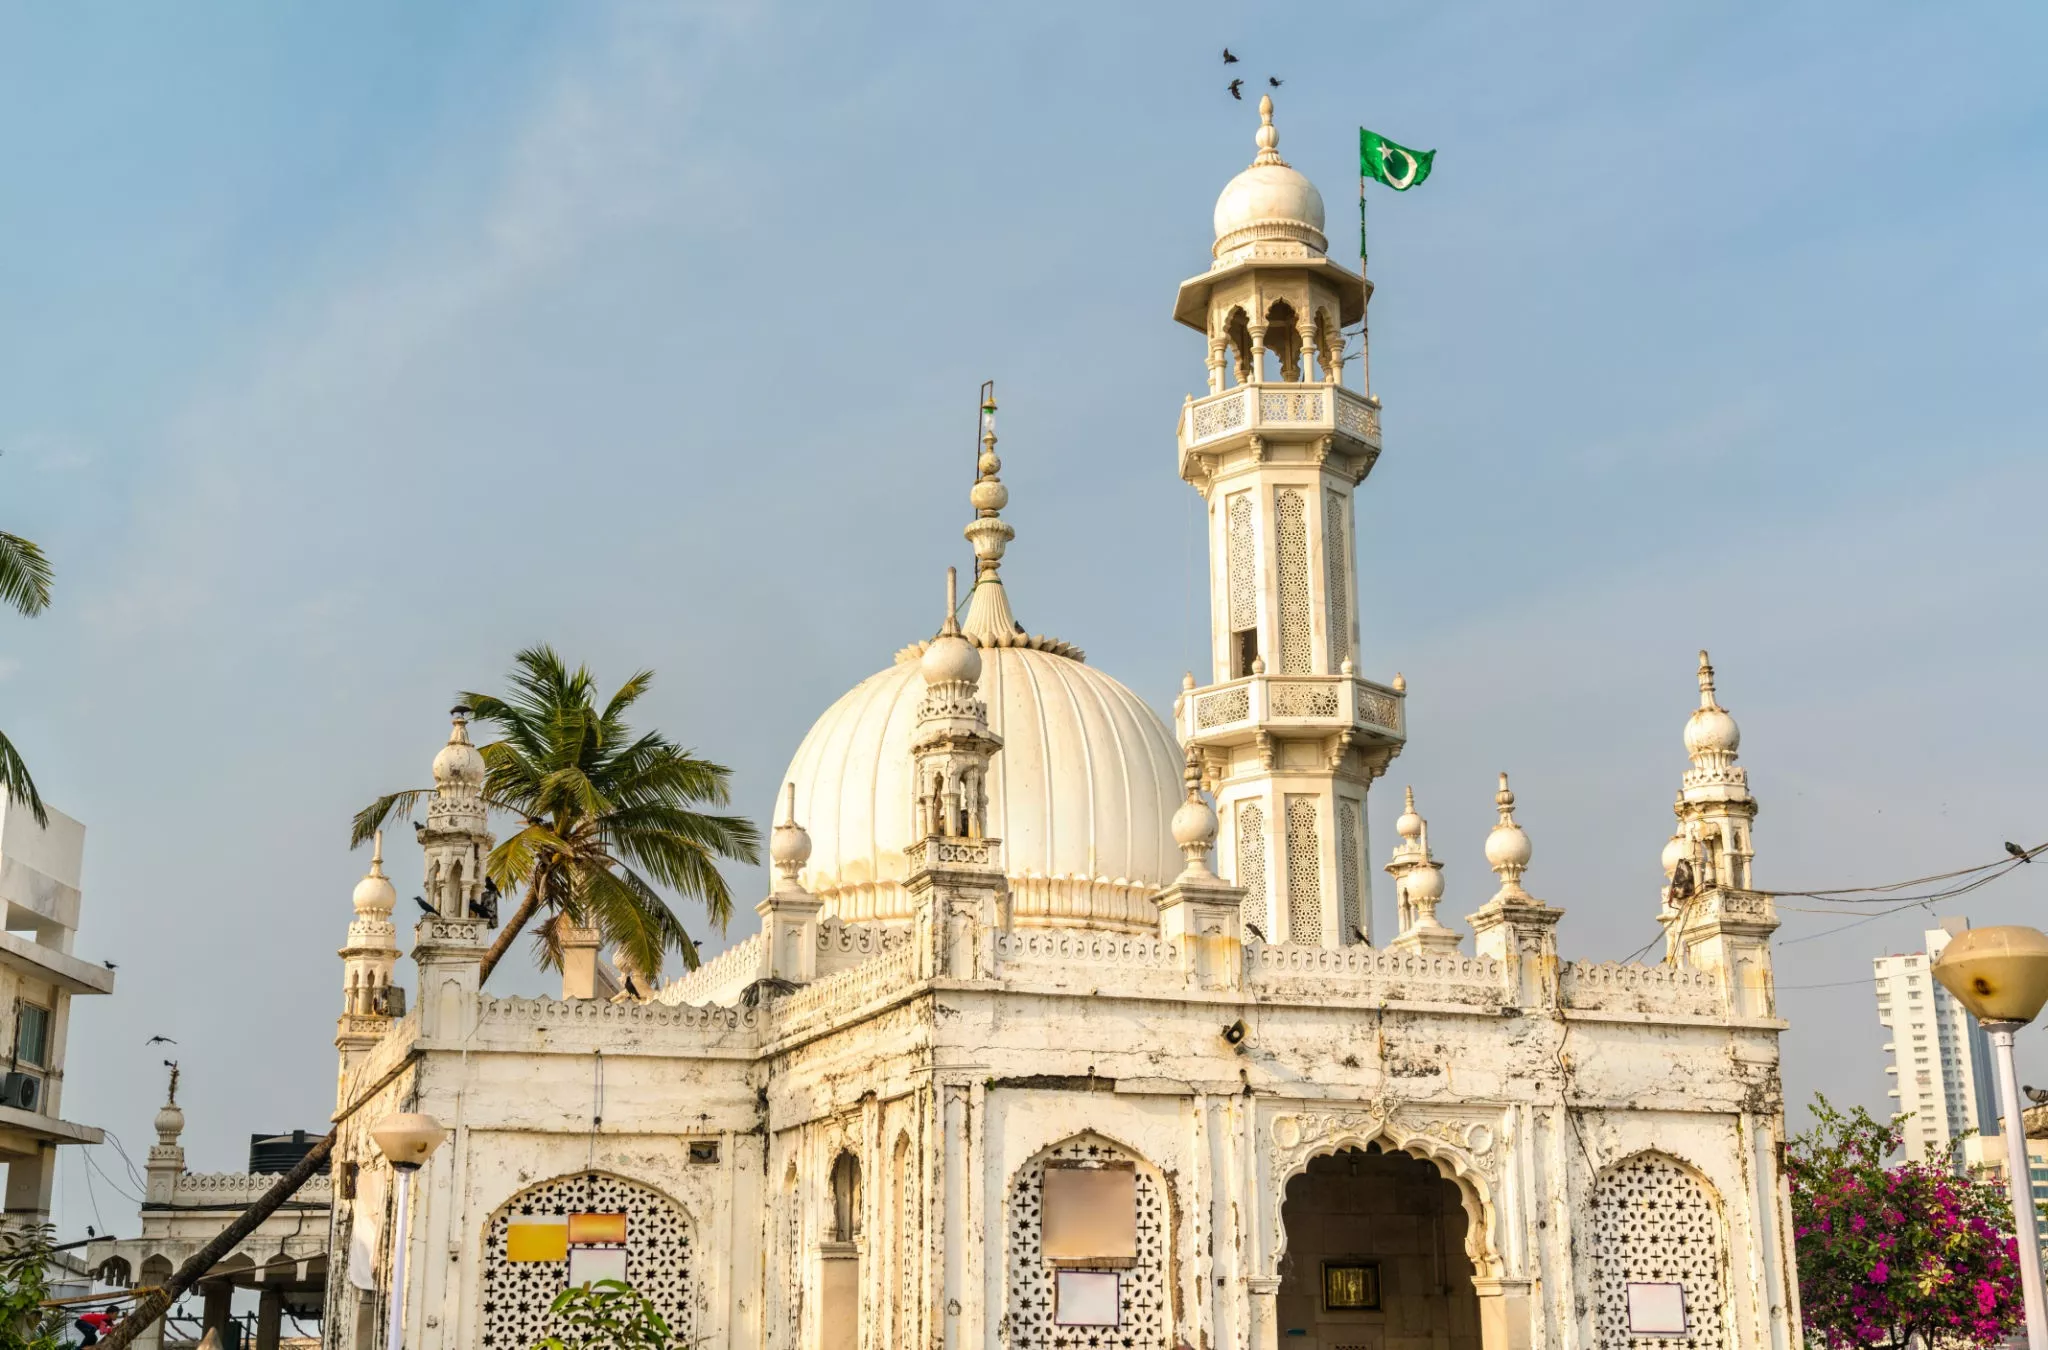 Haji Ali Mosque in India, Central Asia | Architecture - Rated 3.7